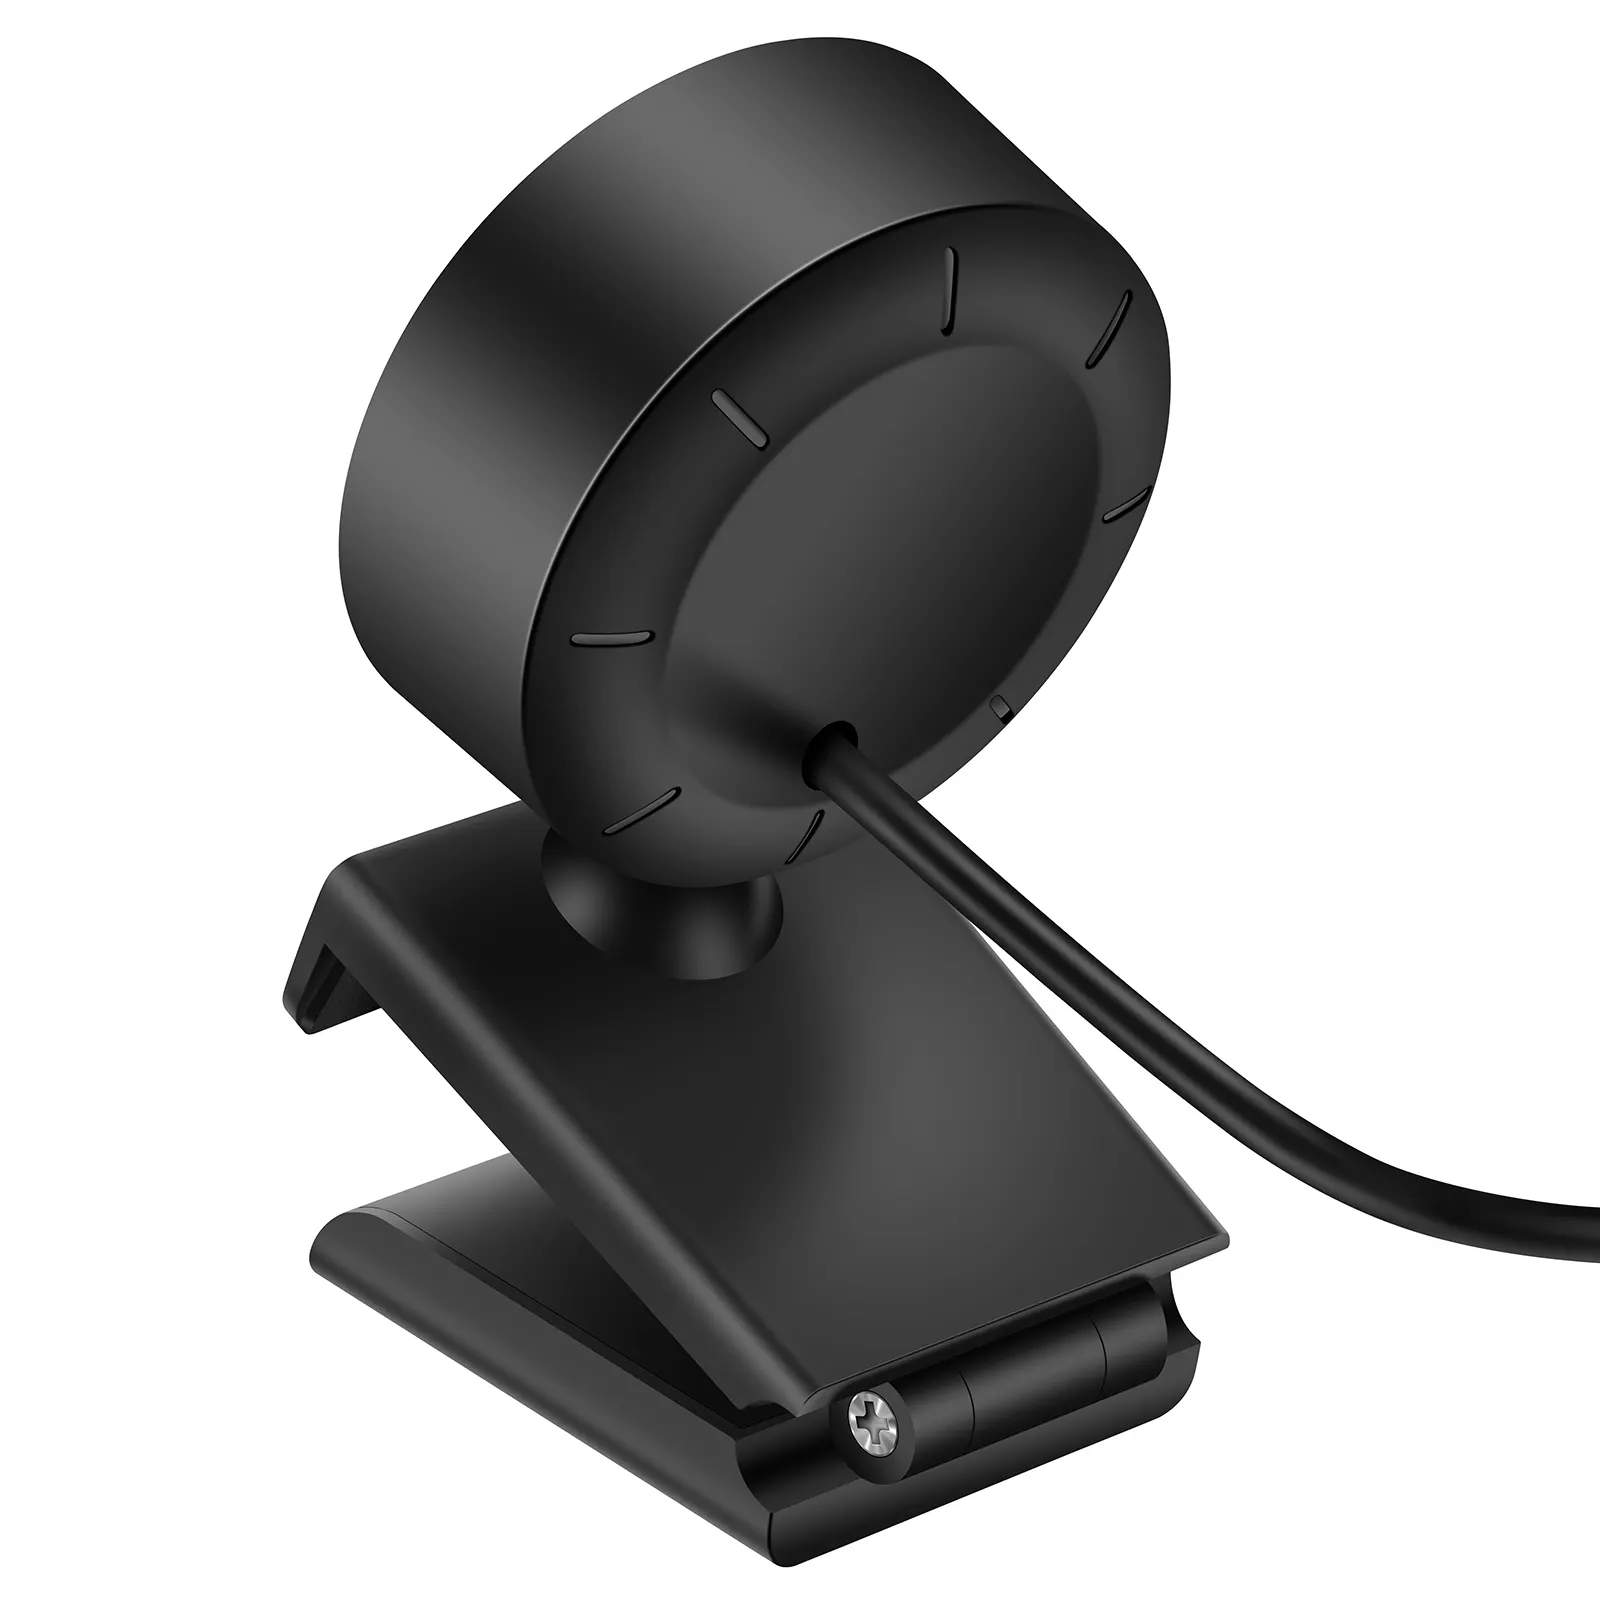 Vente chaude sans lecteur Fill Light Live Camera Caméra de vidéoconférence sans lecteur USB 1080P HD Auto Focus Webcam plug and play